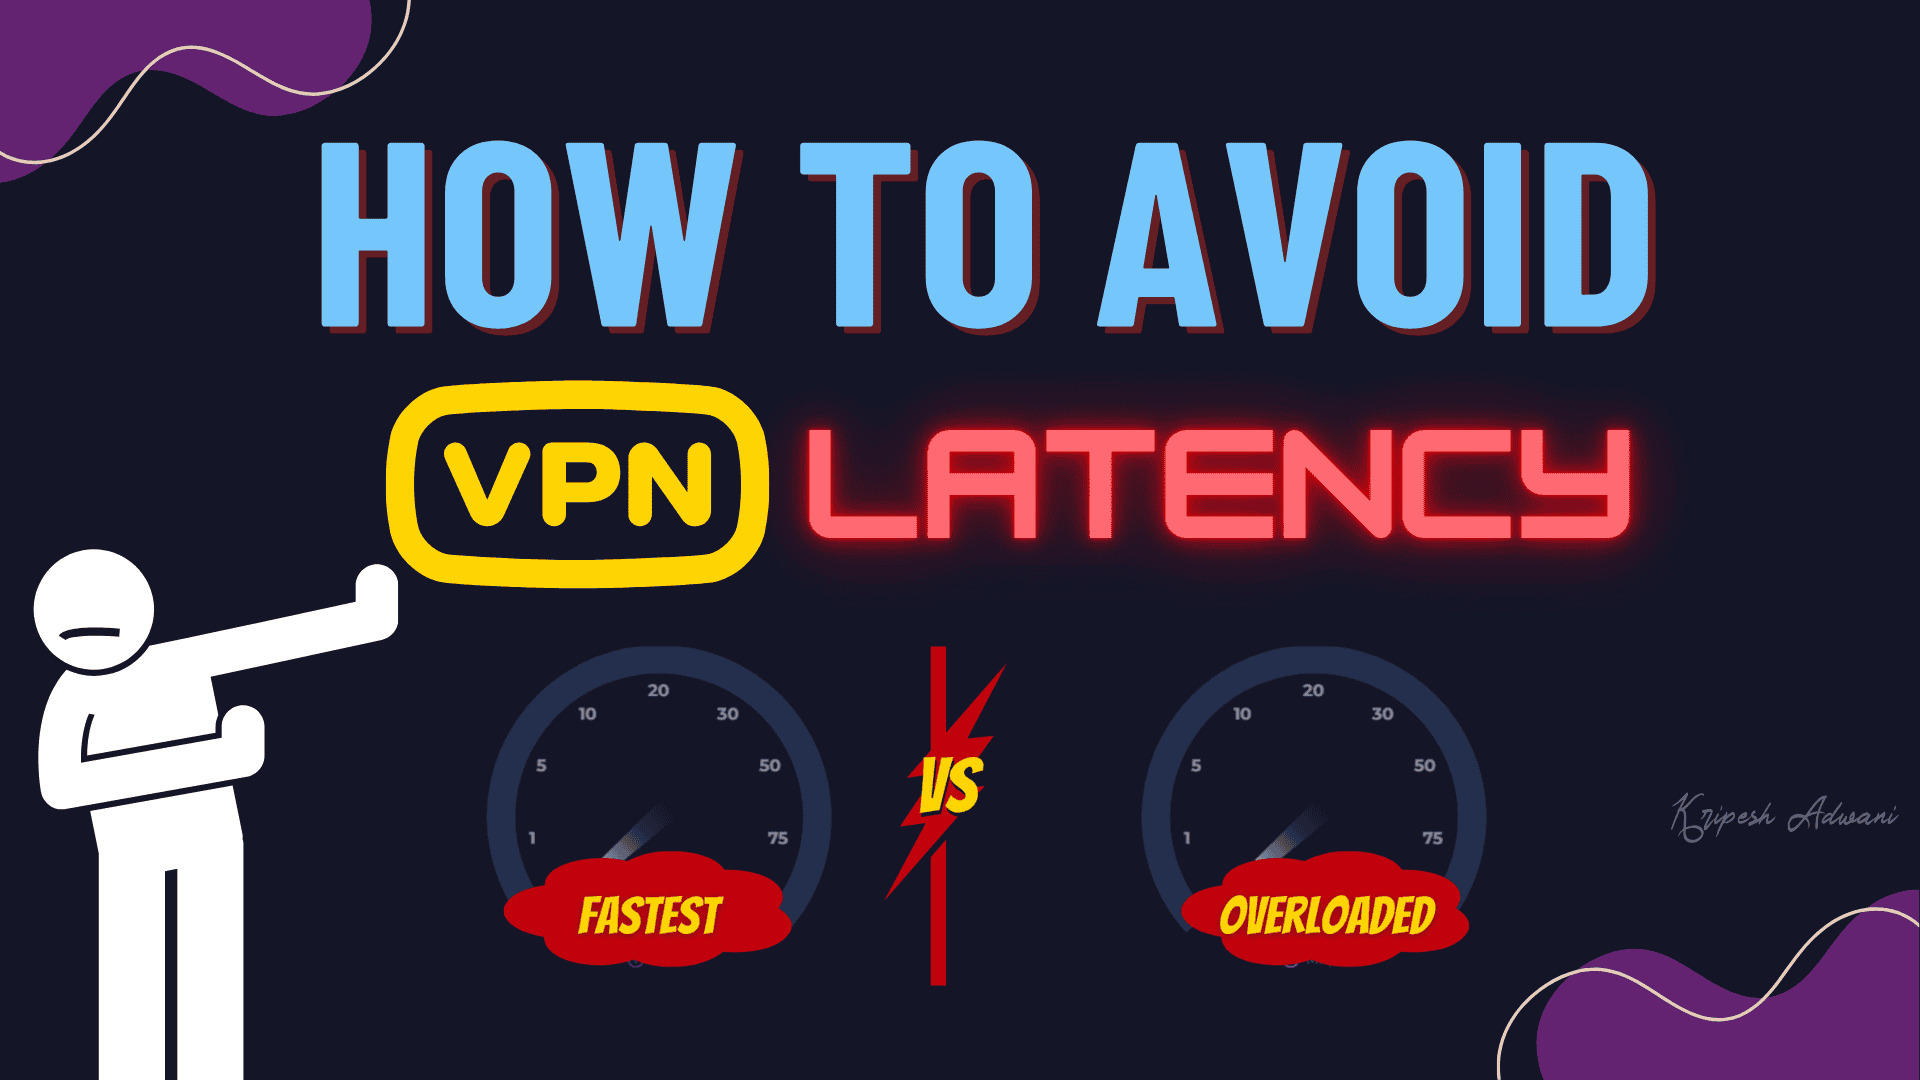 VPN Latency 1